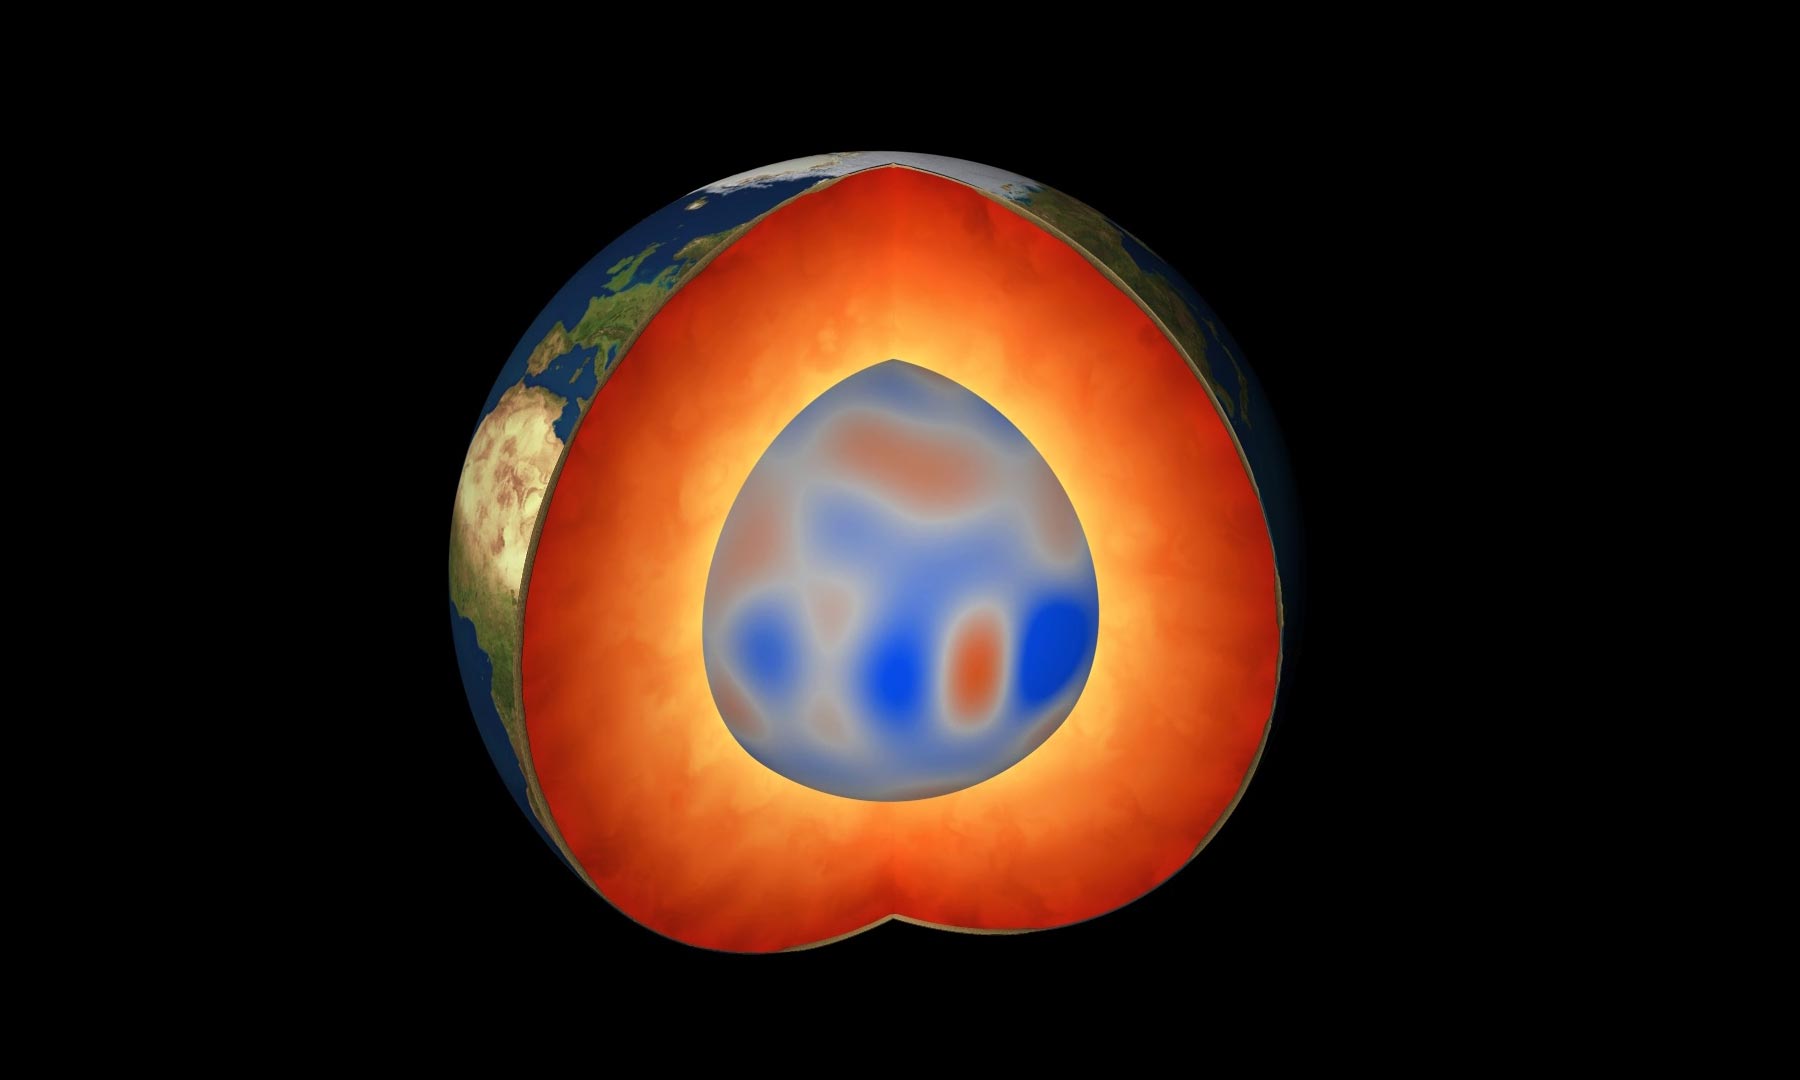 اكتشاف نوع جديد تمامًا من الموجات المغناطيسية التي تجتاح لب الأرض الخارجي